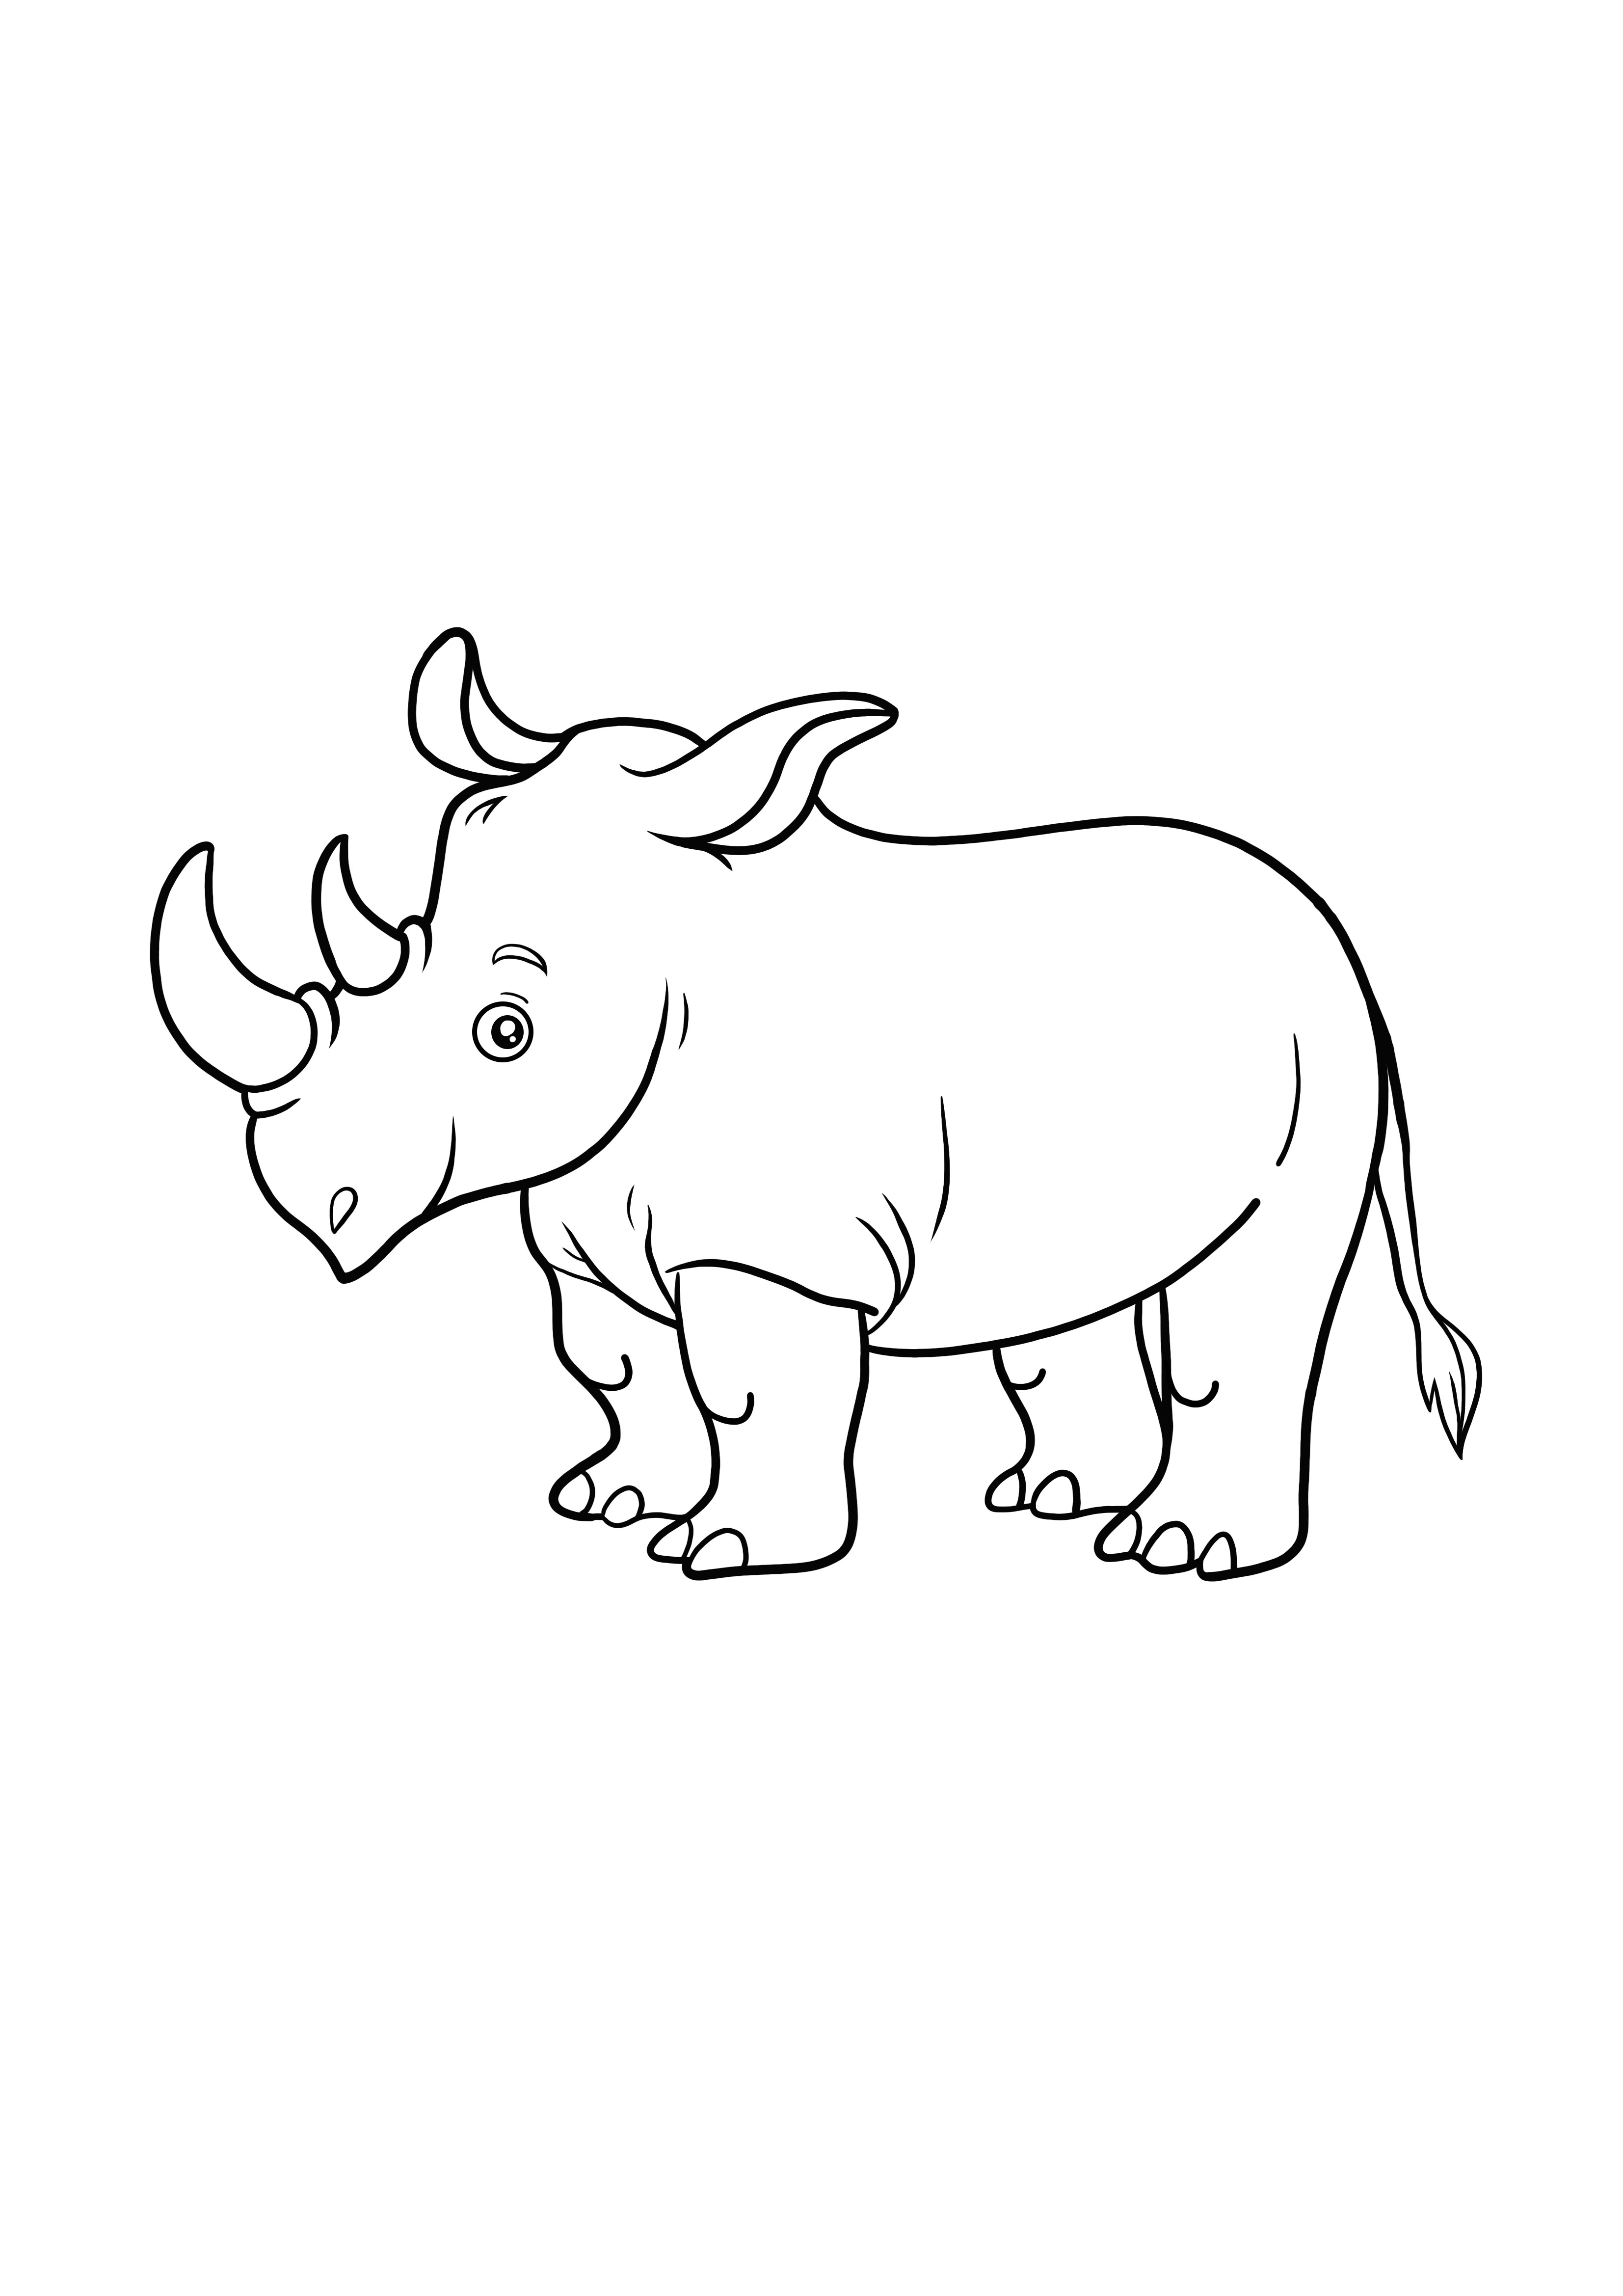 Rhinoのカラーリングと簡単な印刷ページ